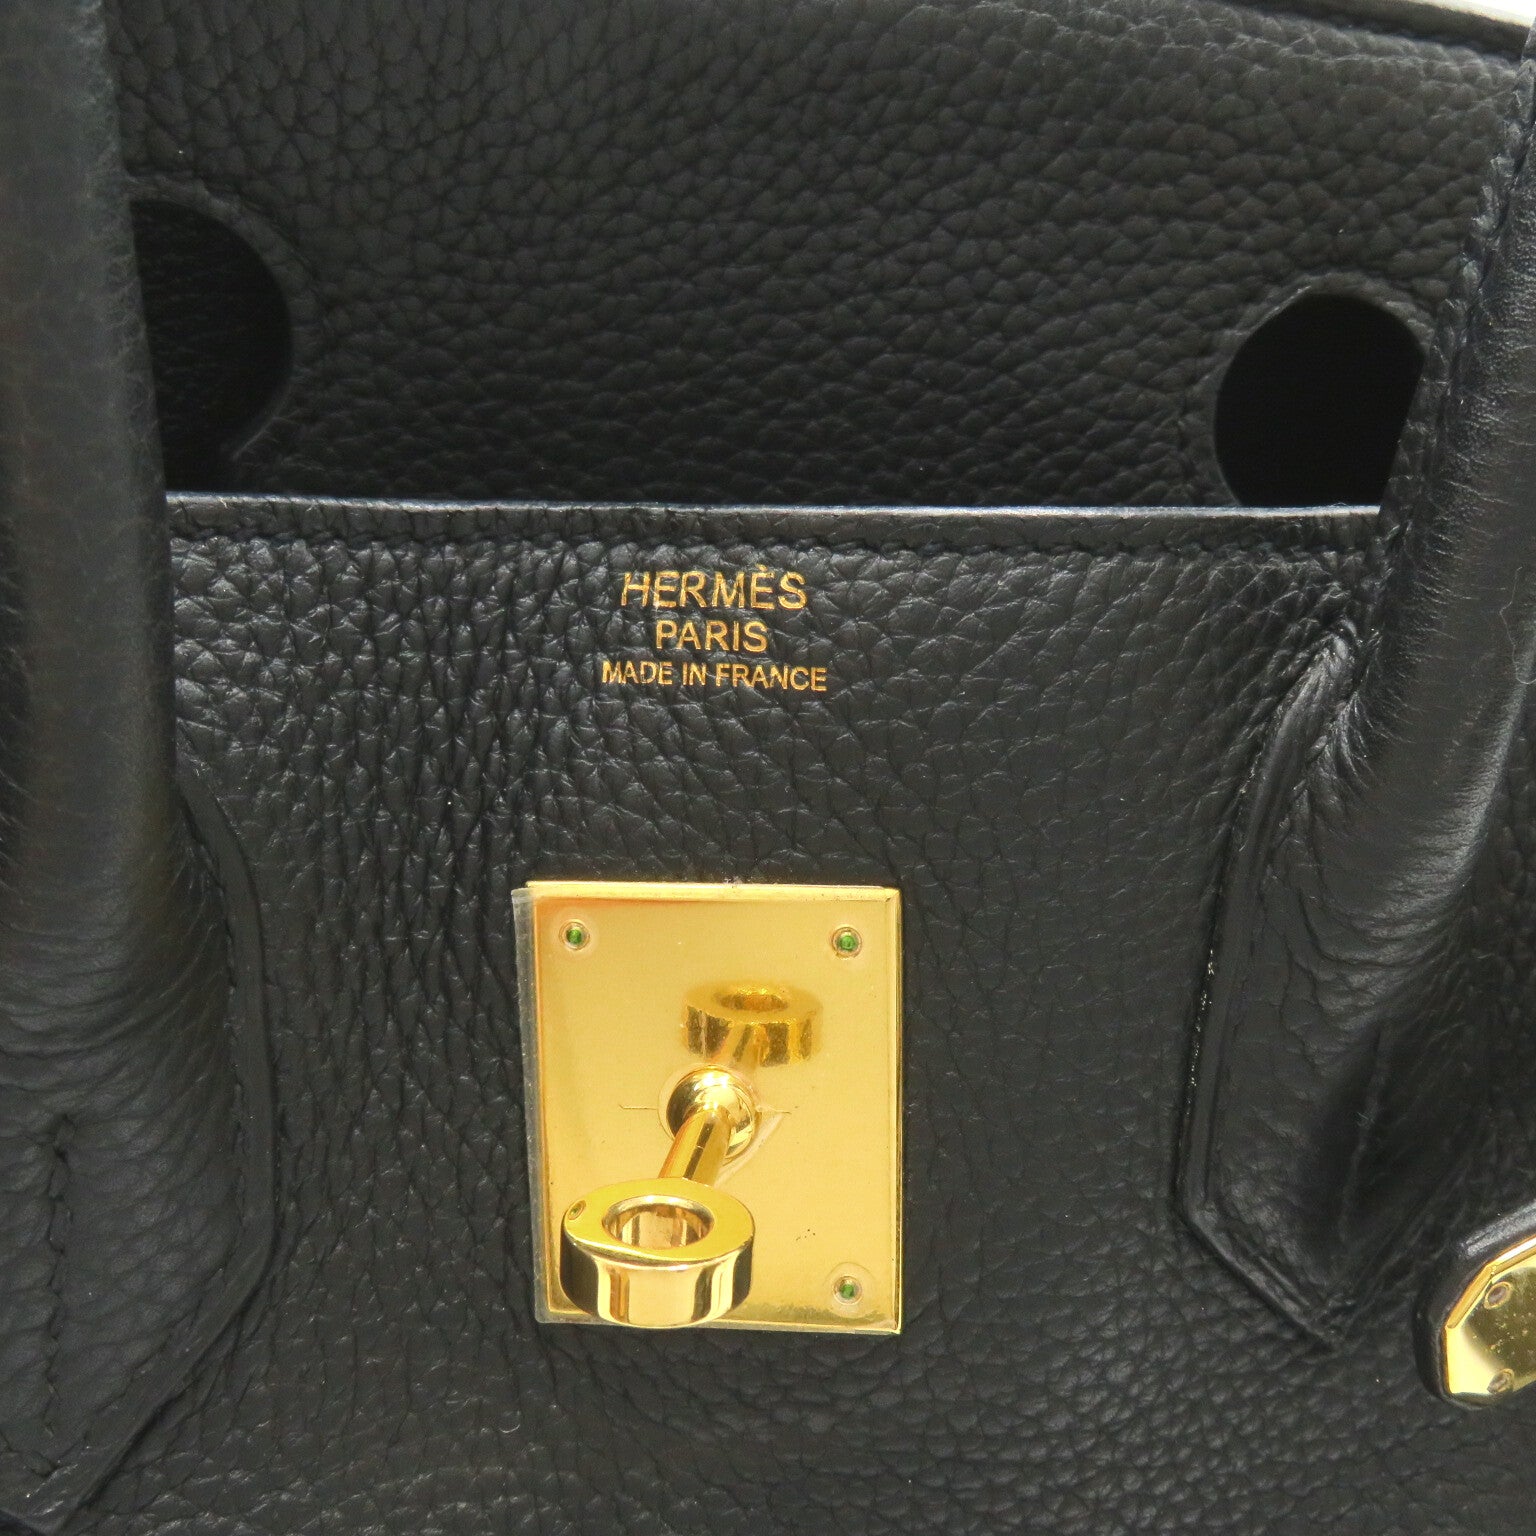 Hermes Hermes Birkin 30 Black Handbag Handbag Handbag